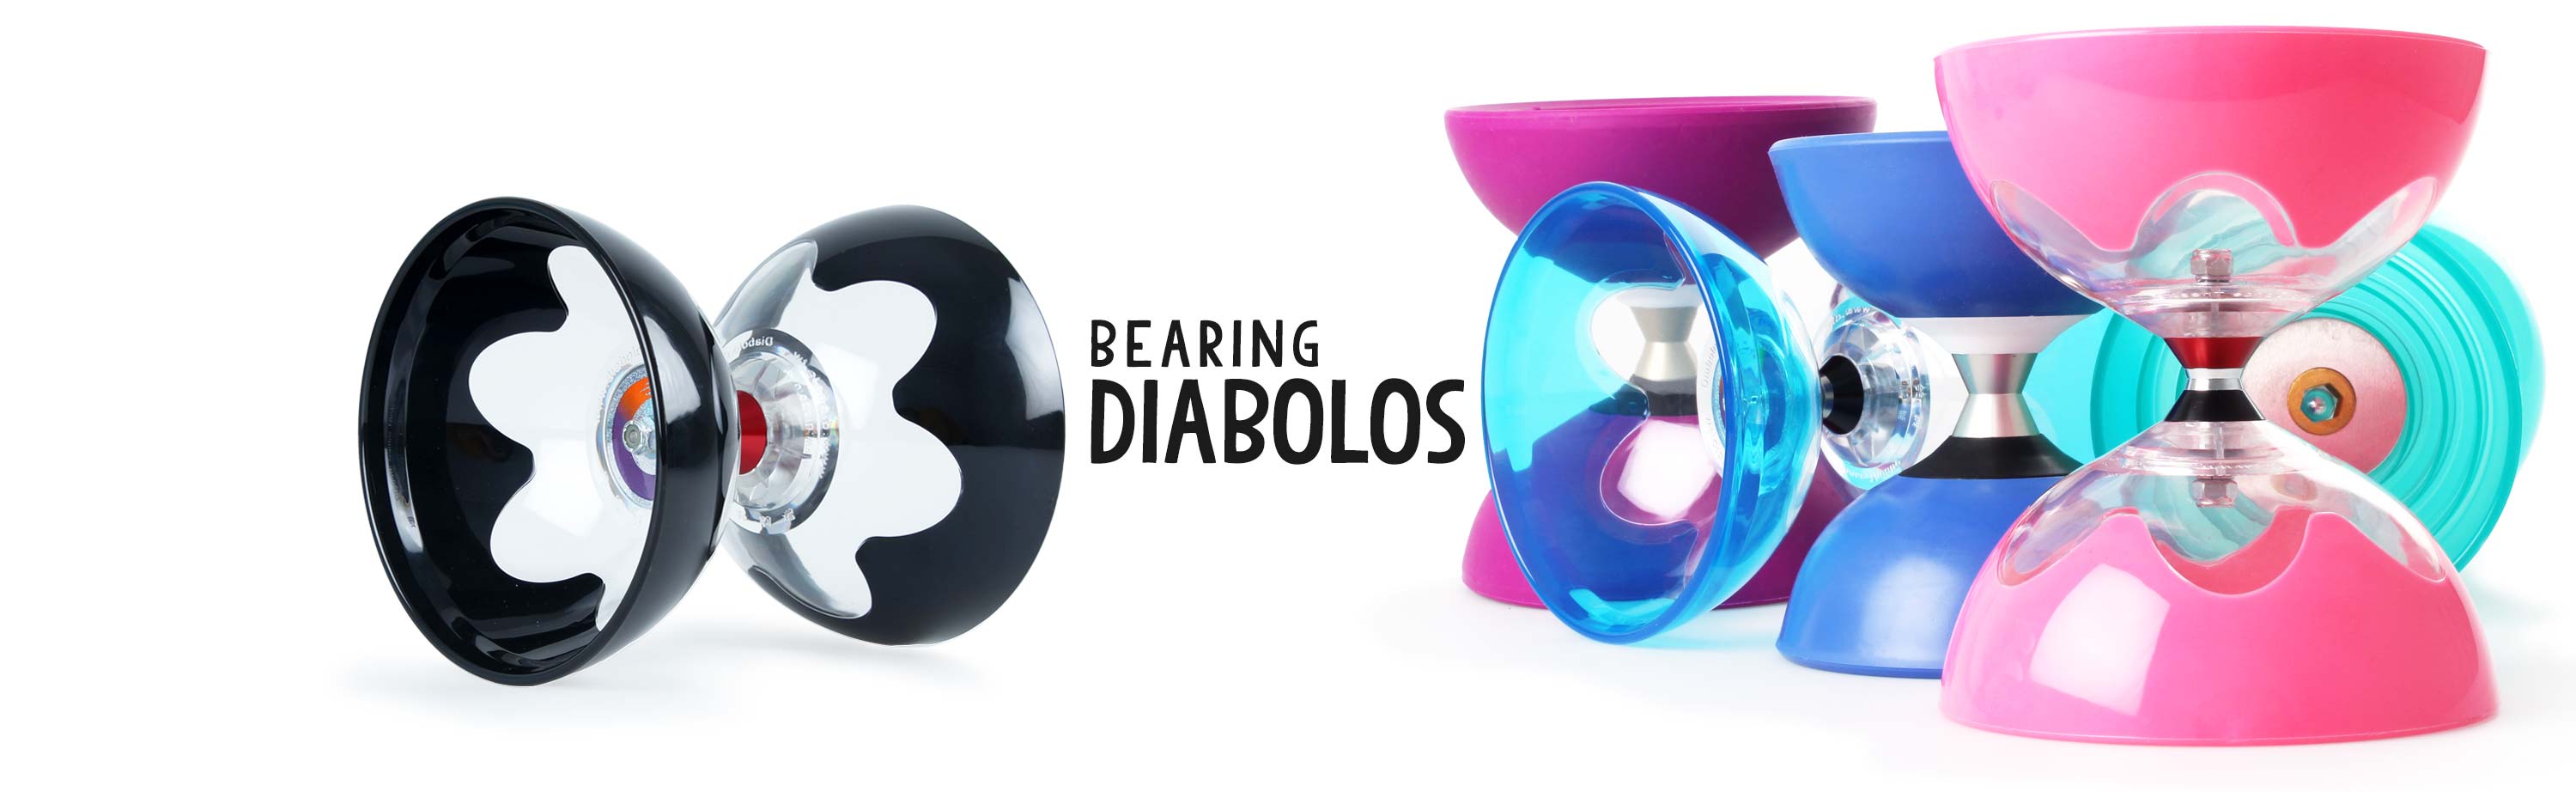 Bearing Diabolos - Diabolo only